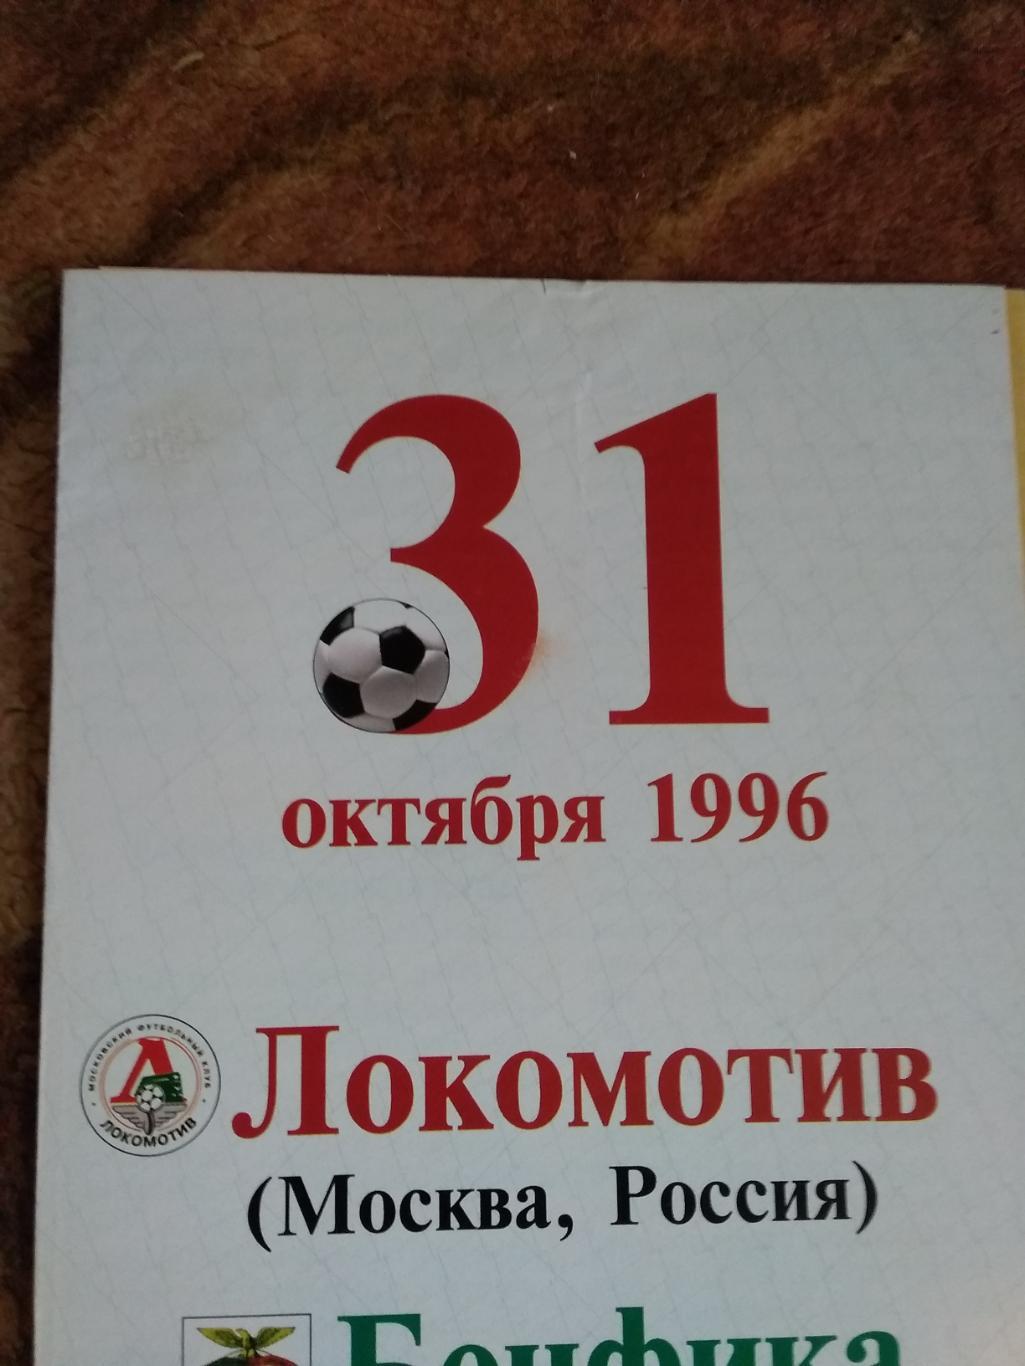 ЕК.Локомотив (Москва,Россия) - Бенфика (Португалия) КОК 31.10.1996 г. 1